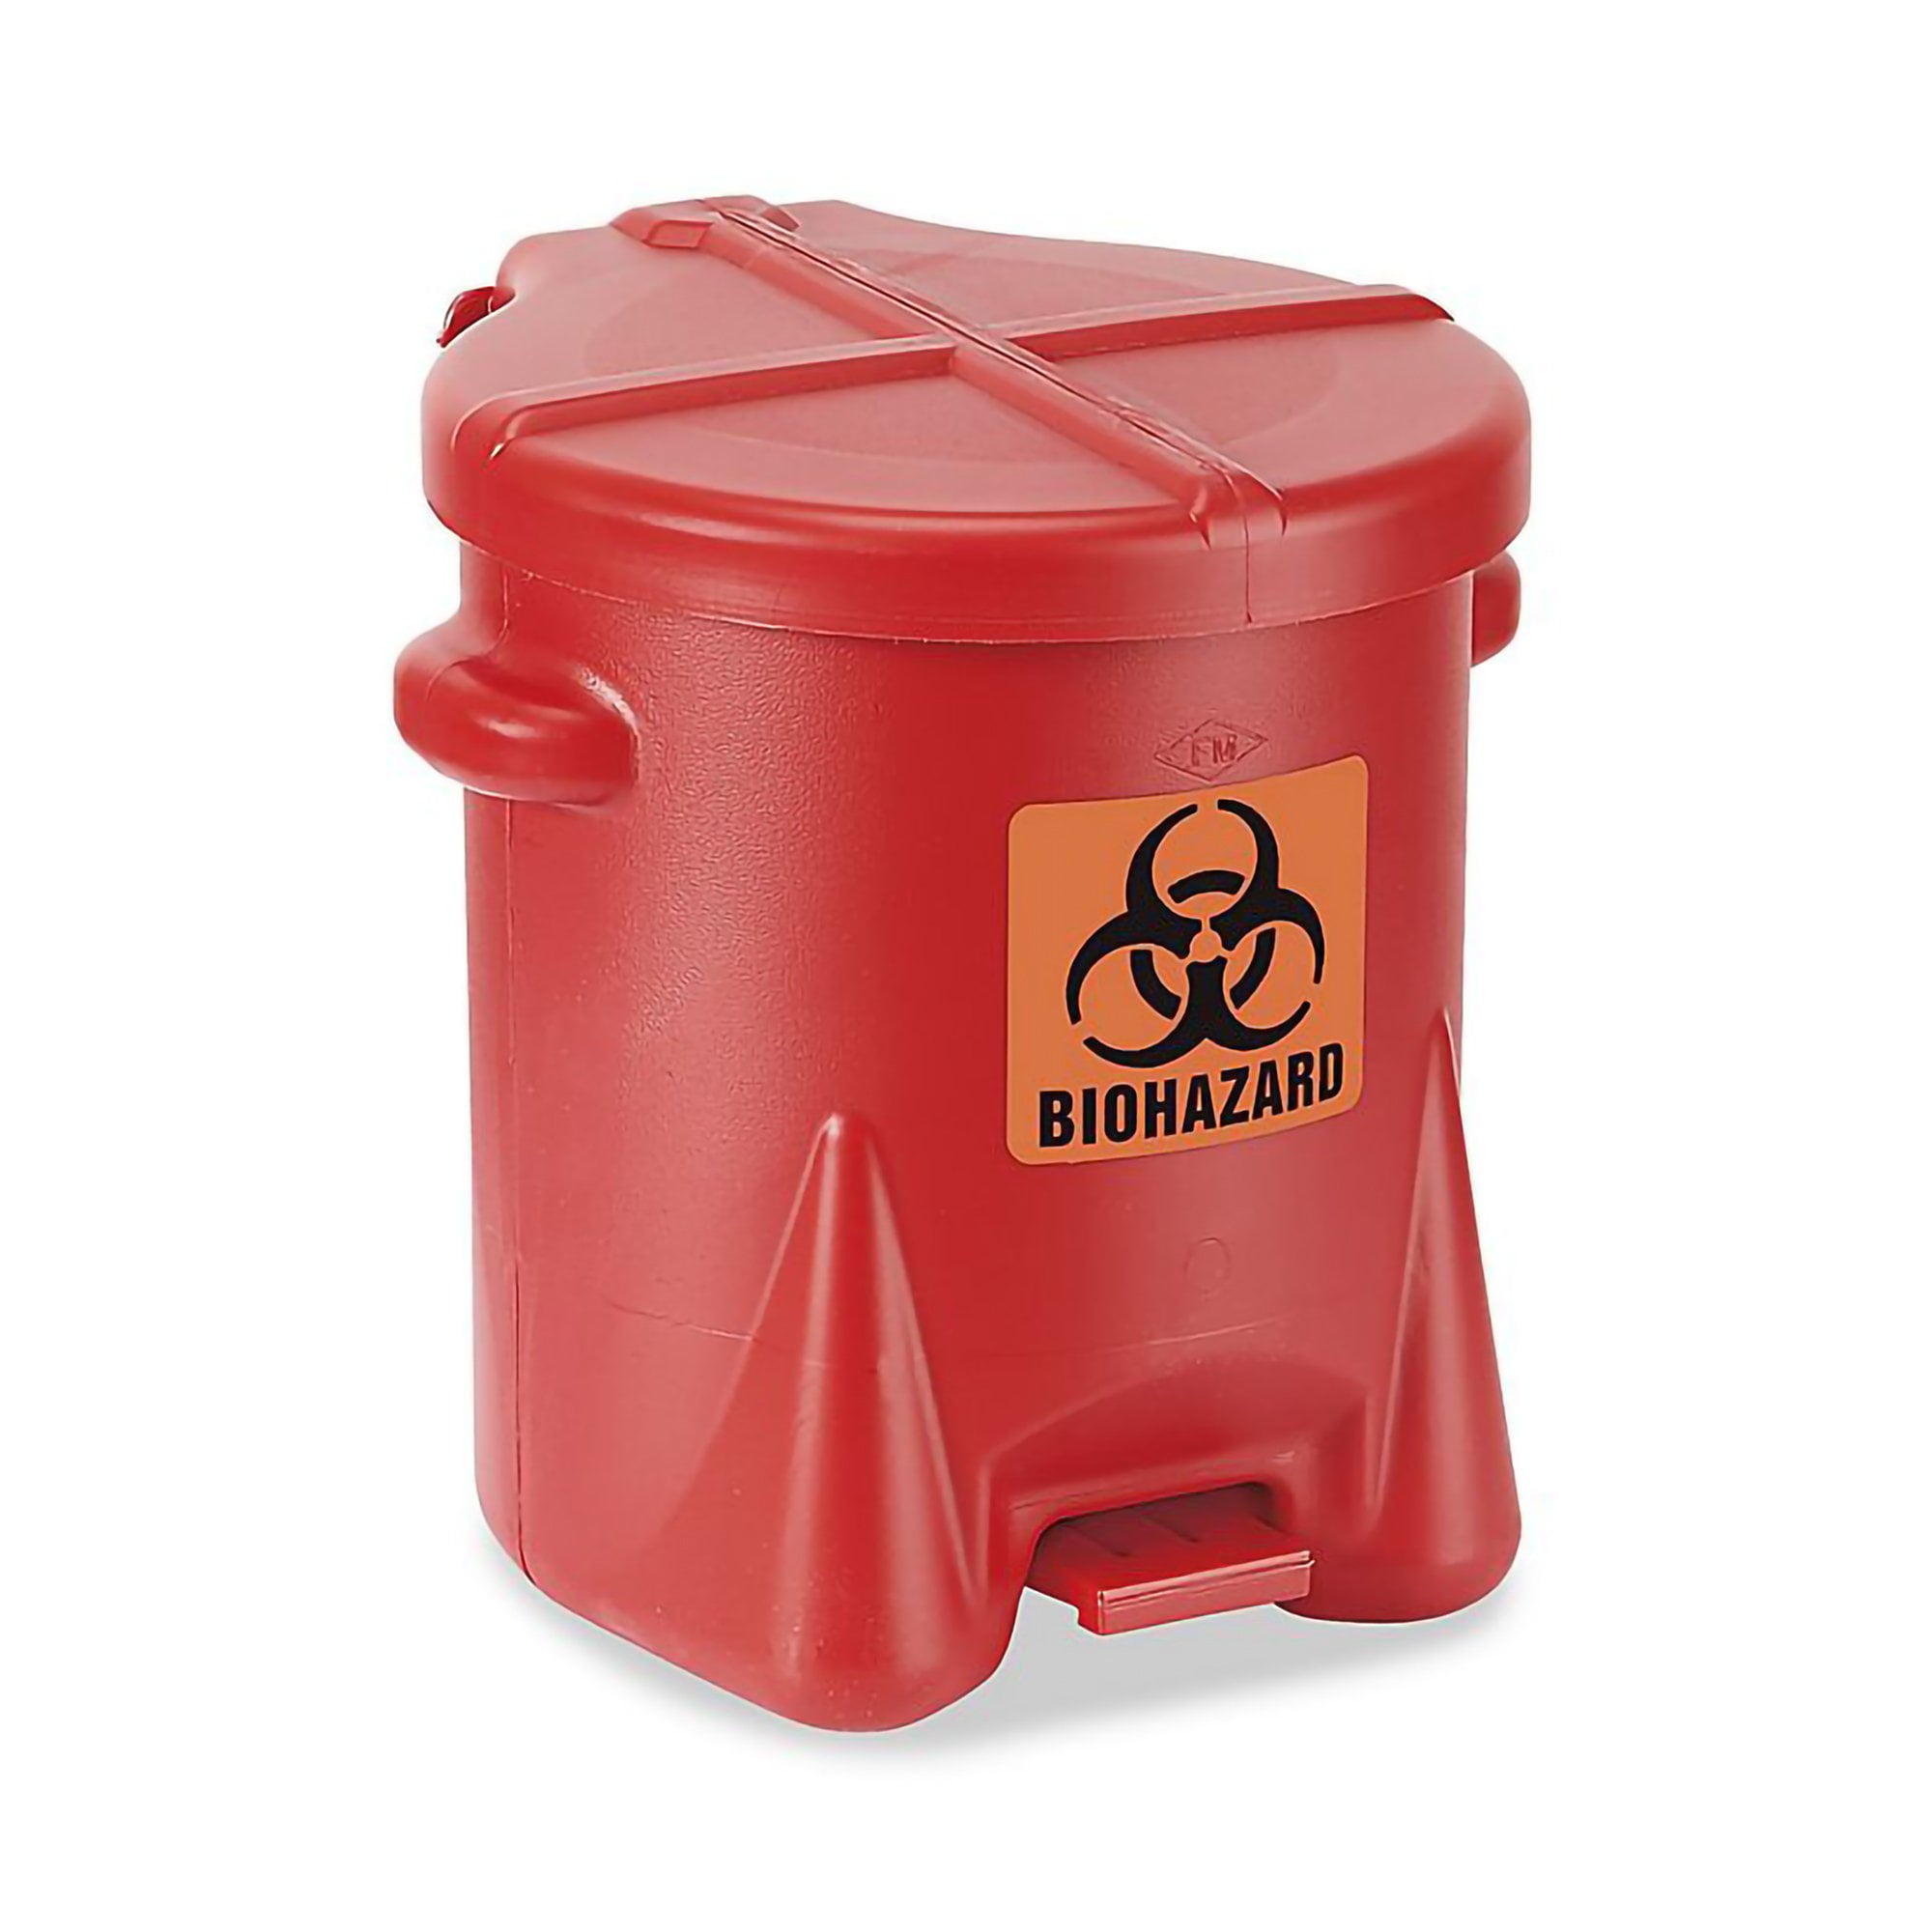 Medegen Medical RD630 Biohazard Waste Bag, Red, 14.5 Width, 19